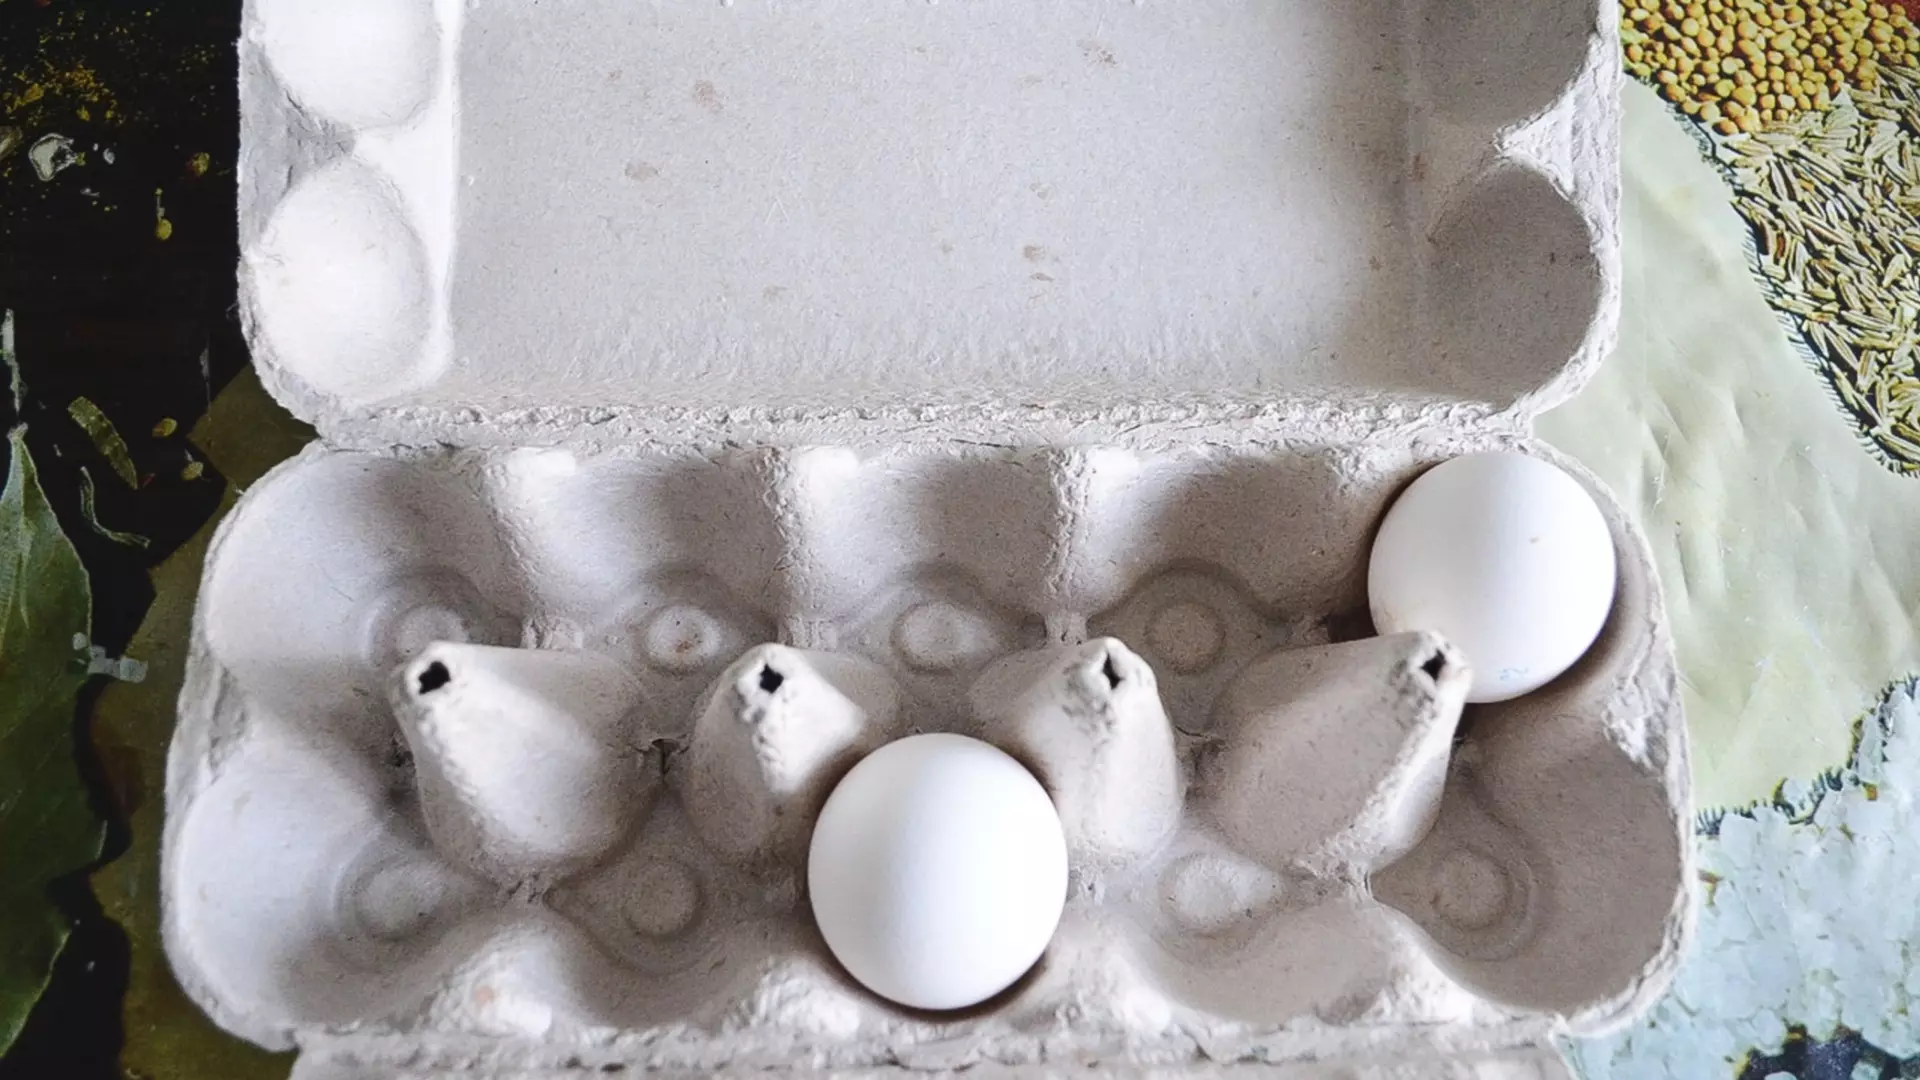 Цены на яйца выросли почти вдвое